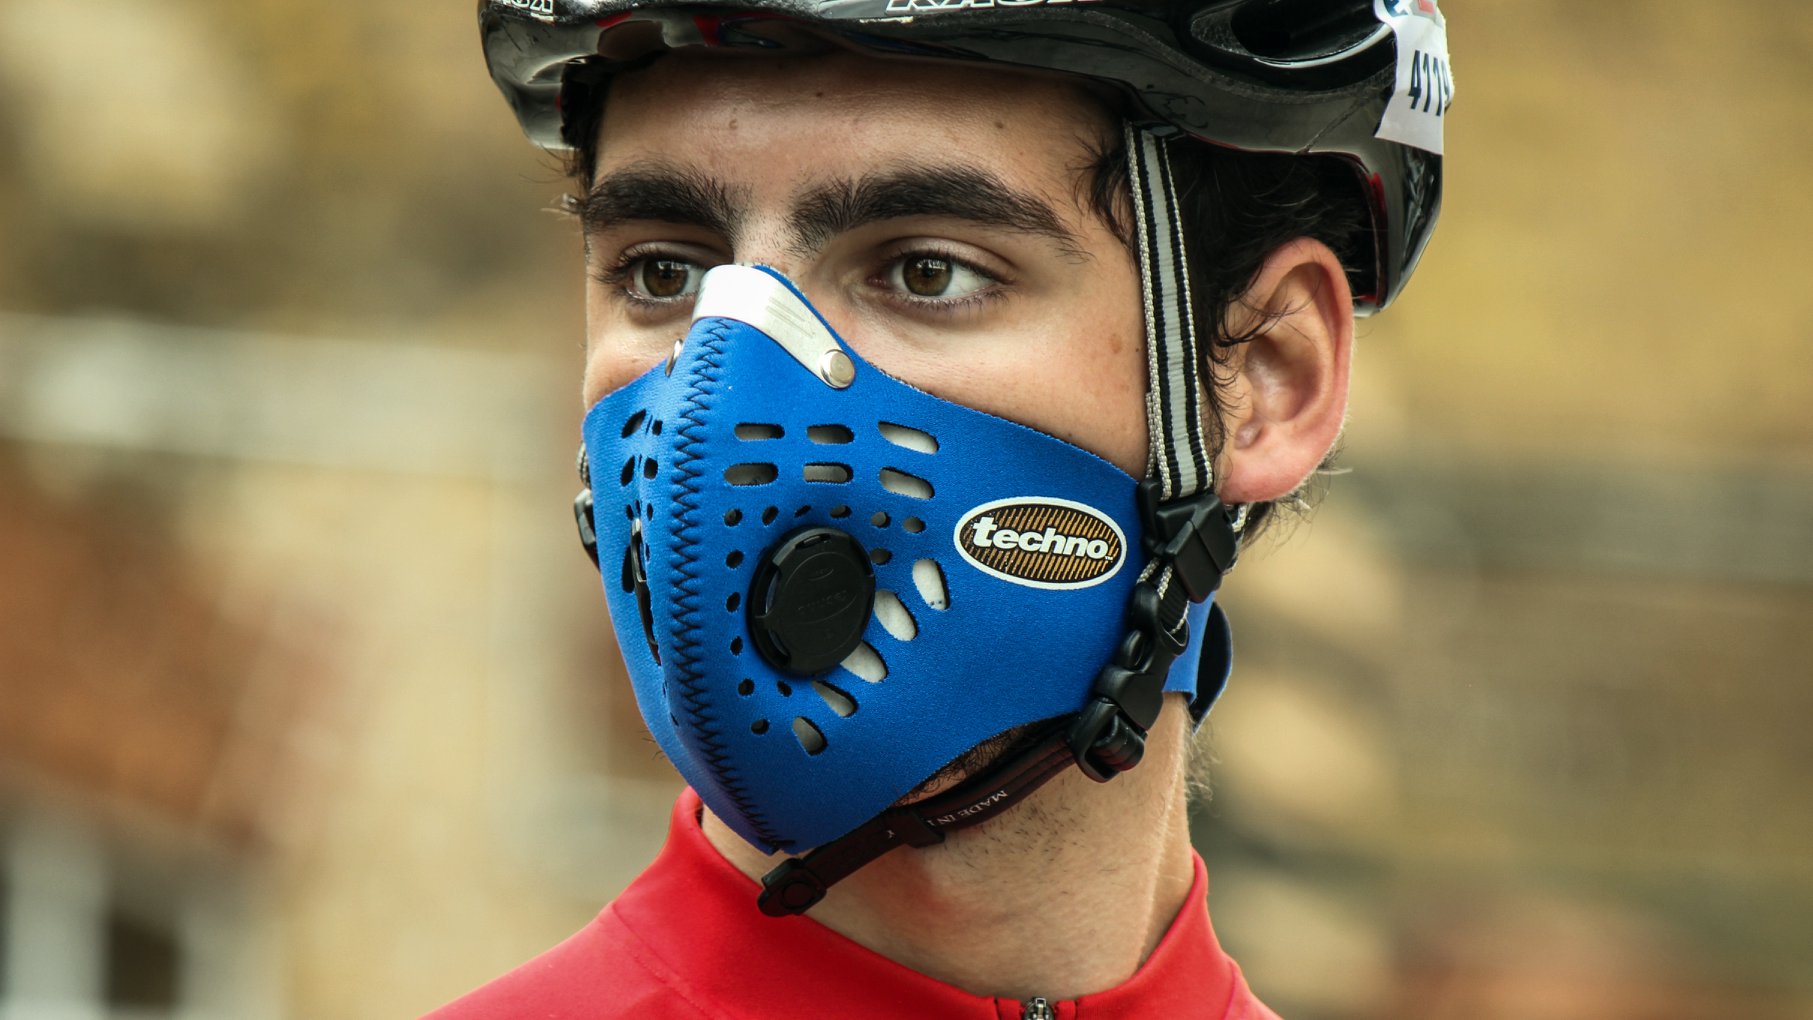 Masque anti pollen, une protection efficace pour les cyclistes